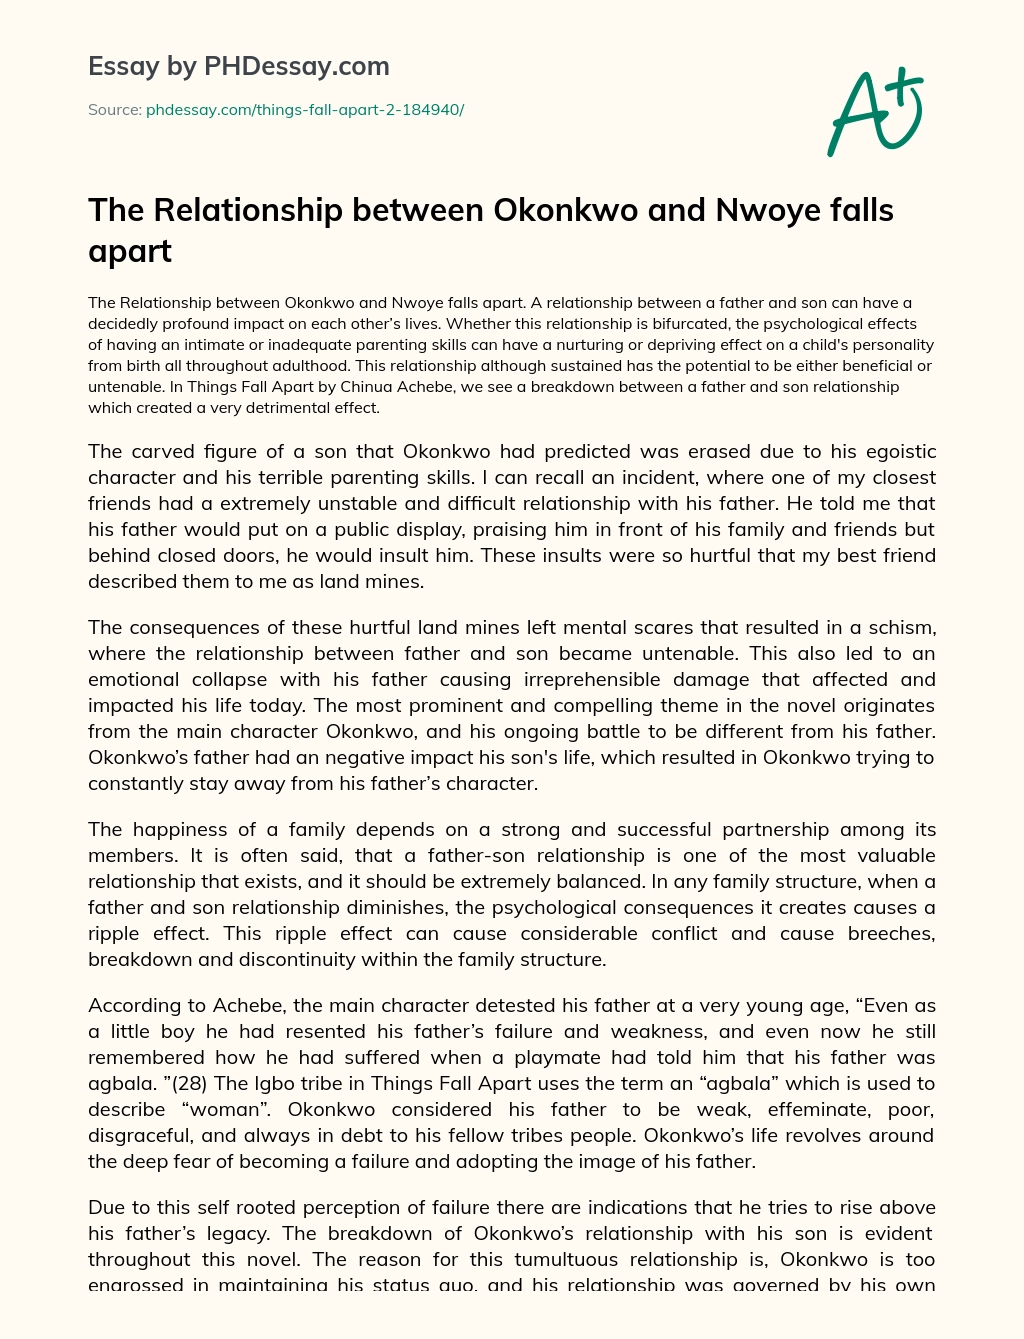 The Relationship between Okonkwo and Nwoye falls apart essay